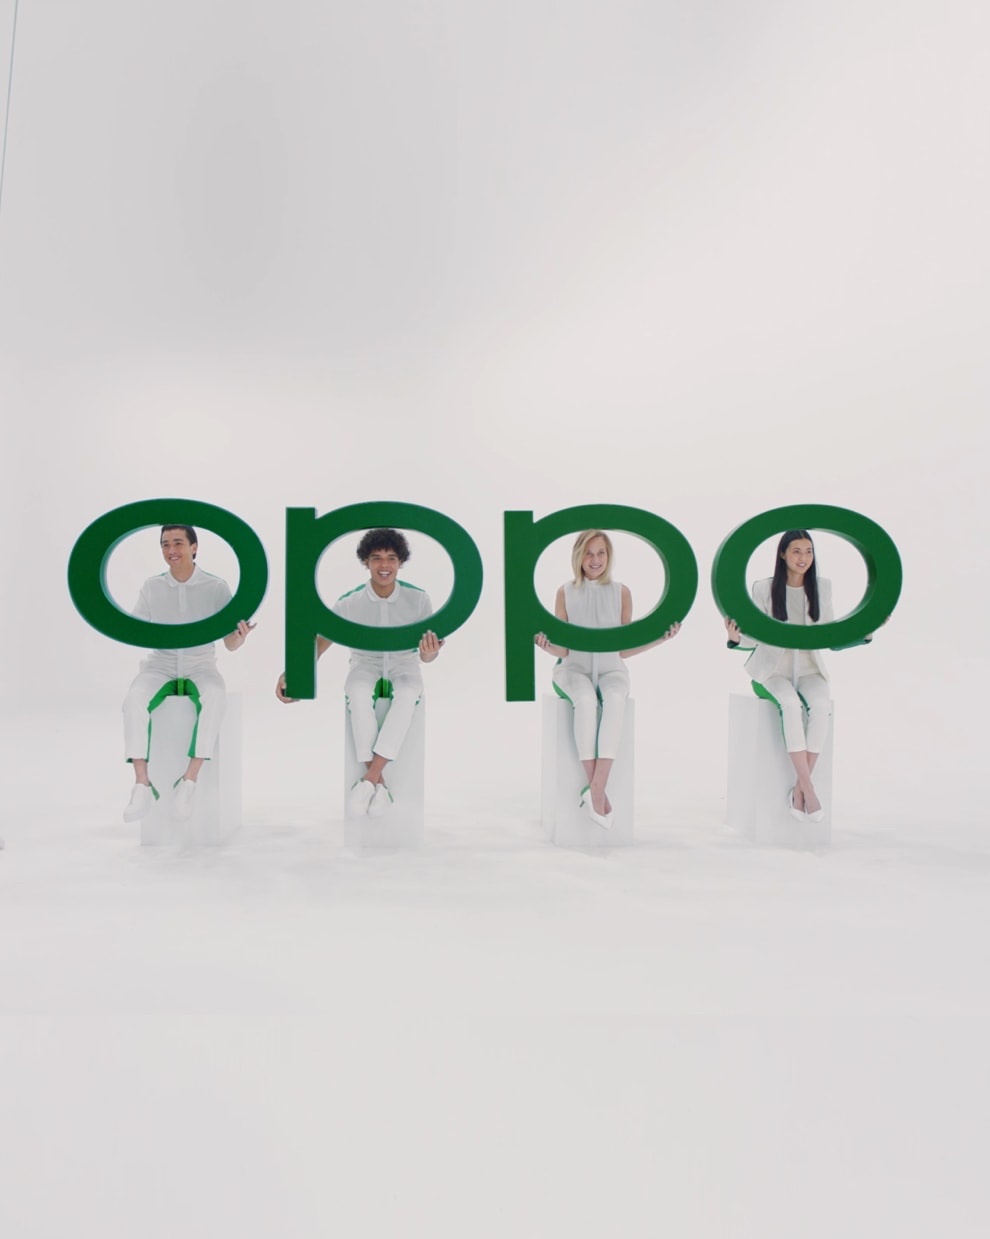 OPPO lanzará su sistema operativo ColorOS11 el próximo lunes 14 de septiembre